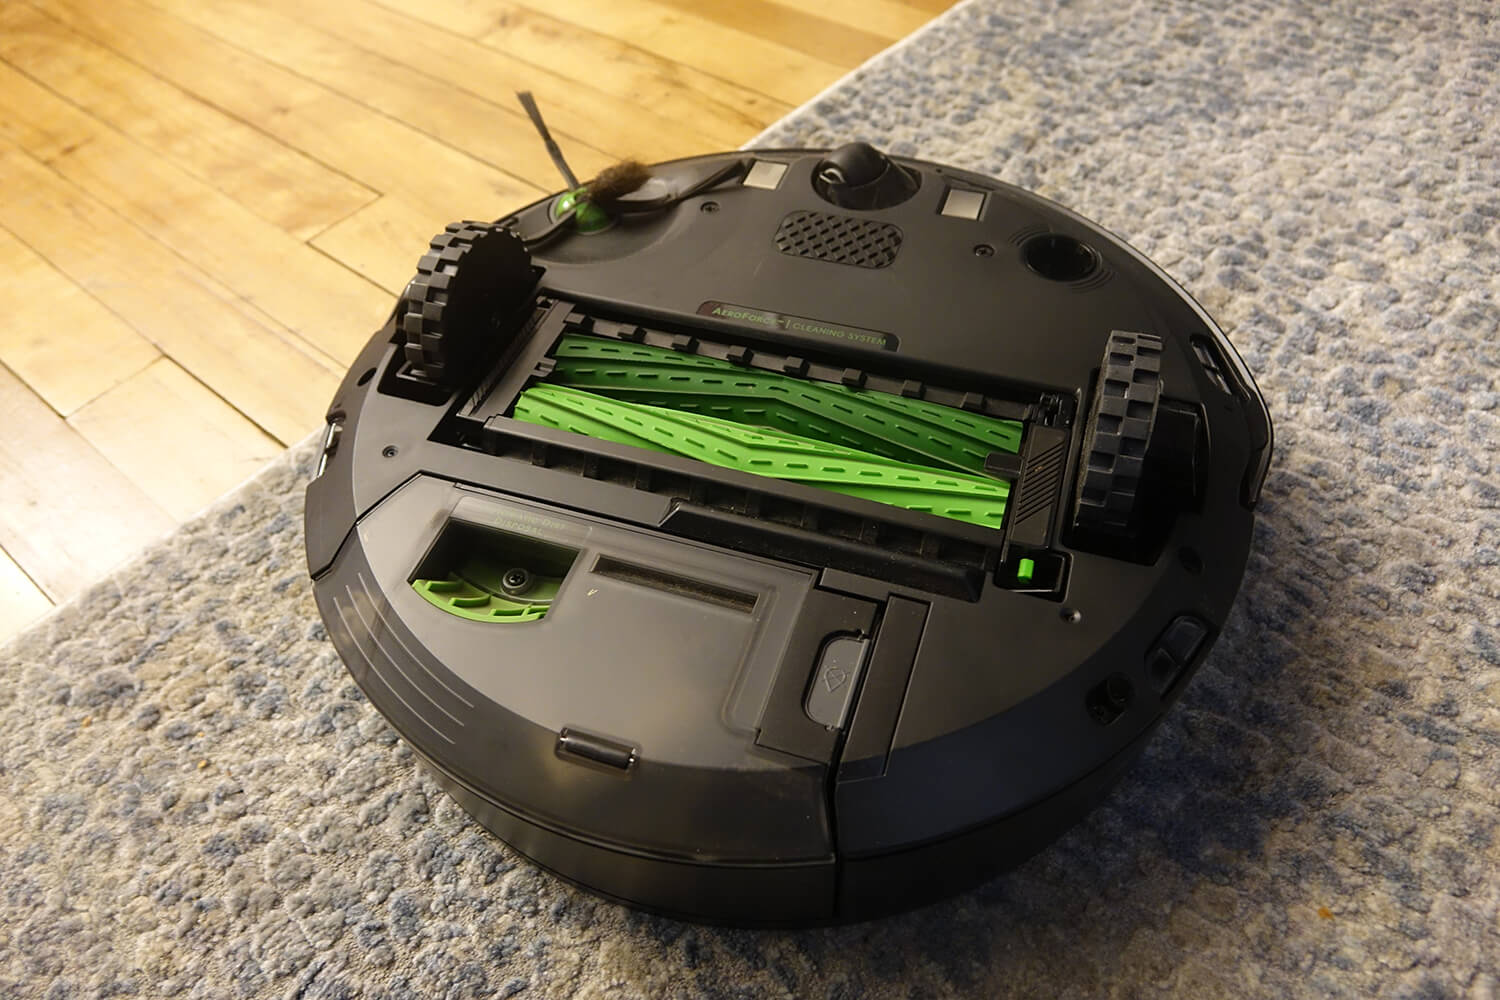 Underside of the iRobot Roomba j7+ robot vacuum